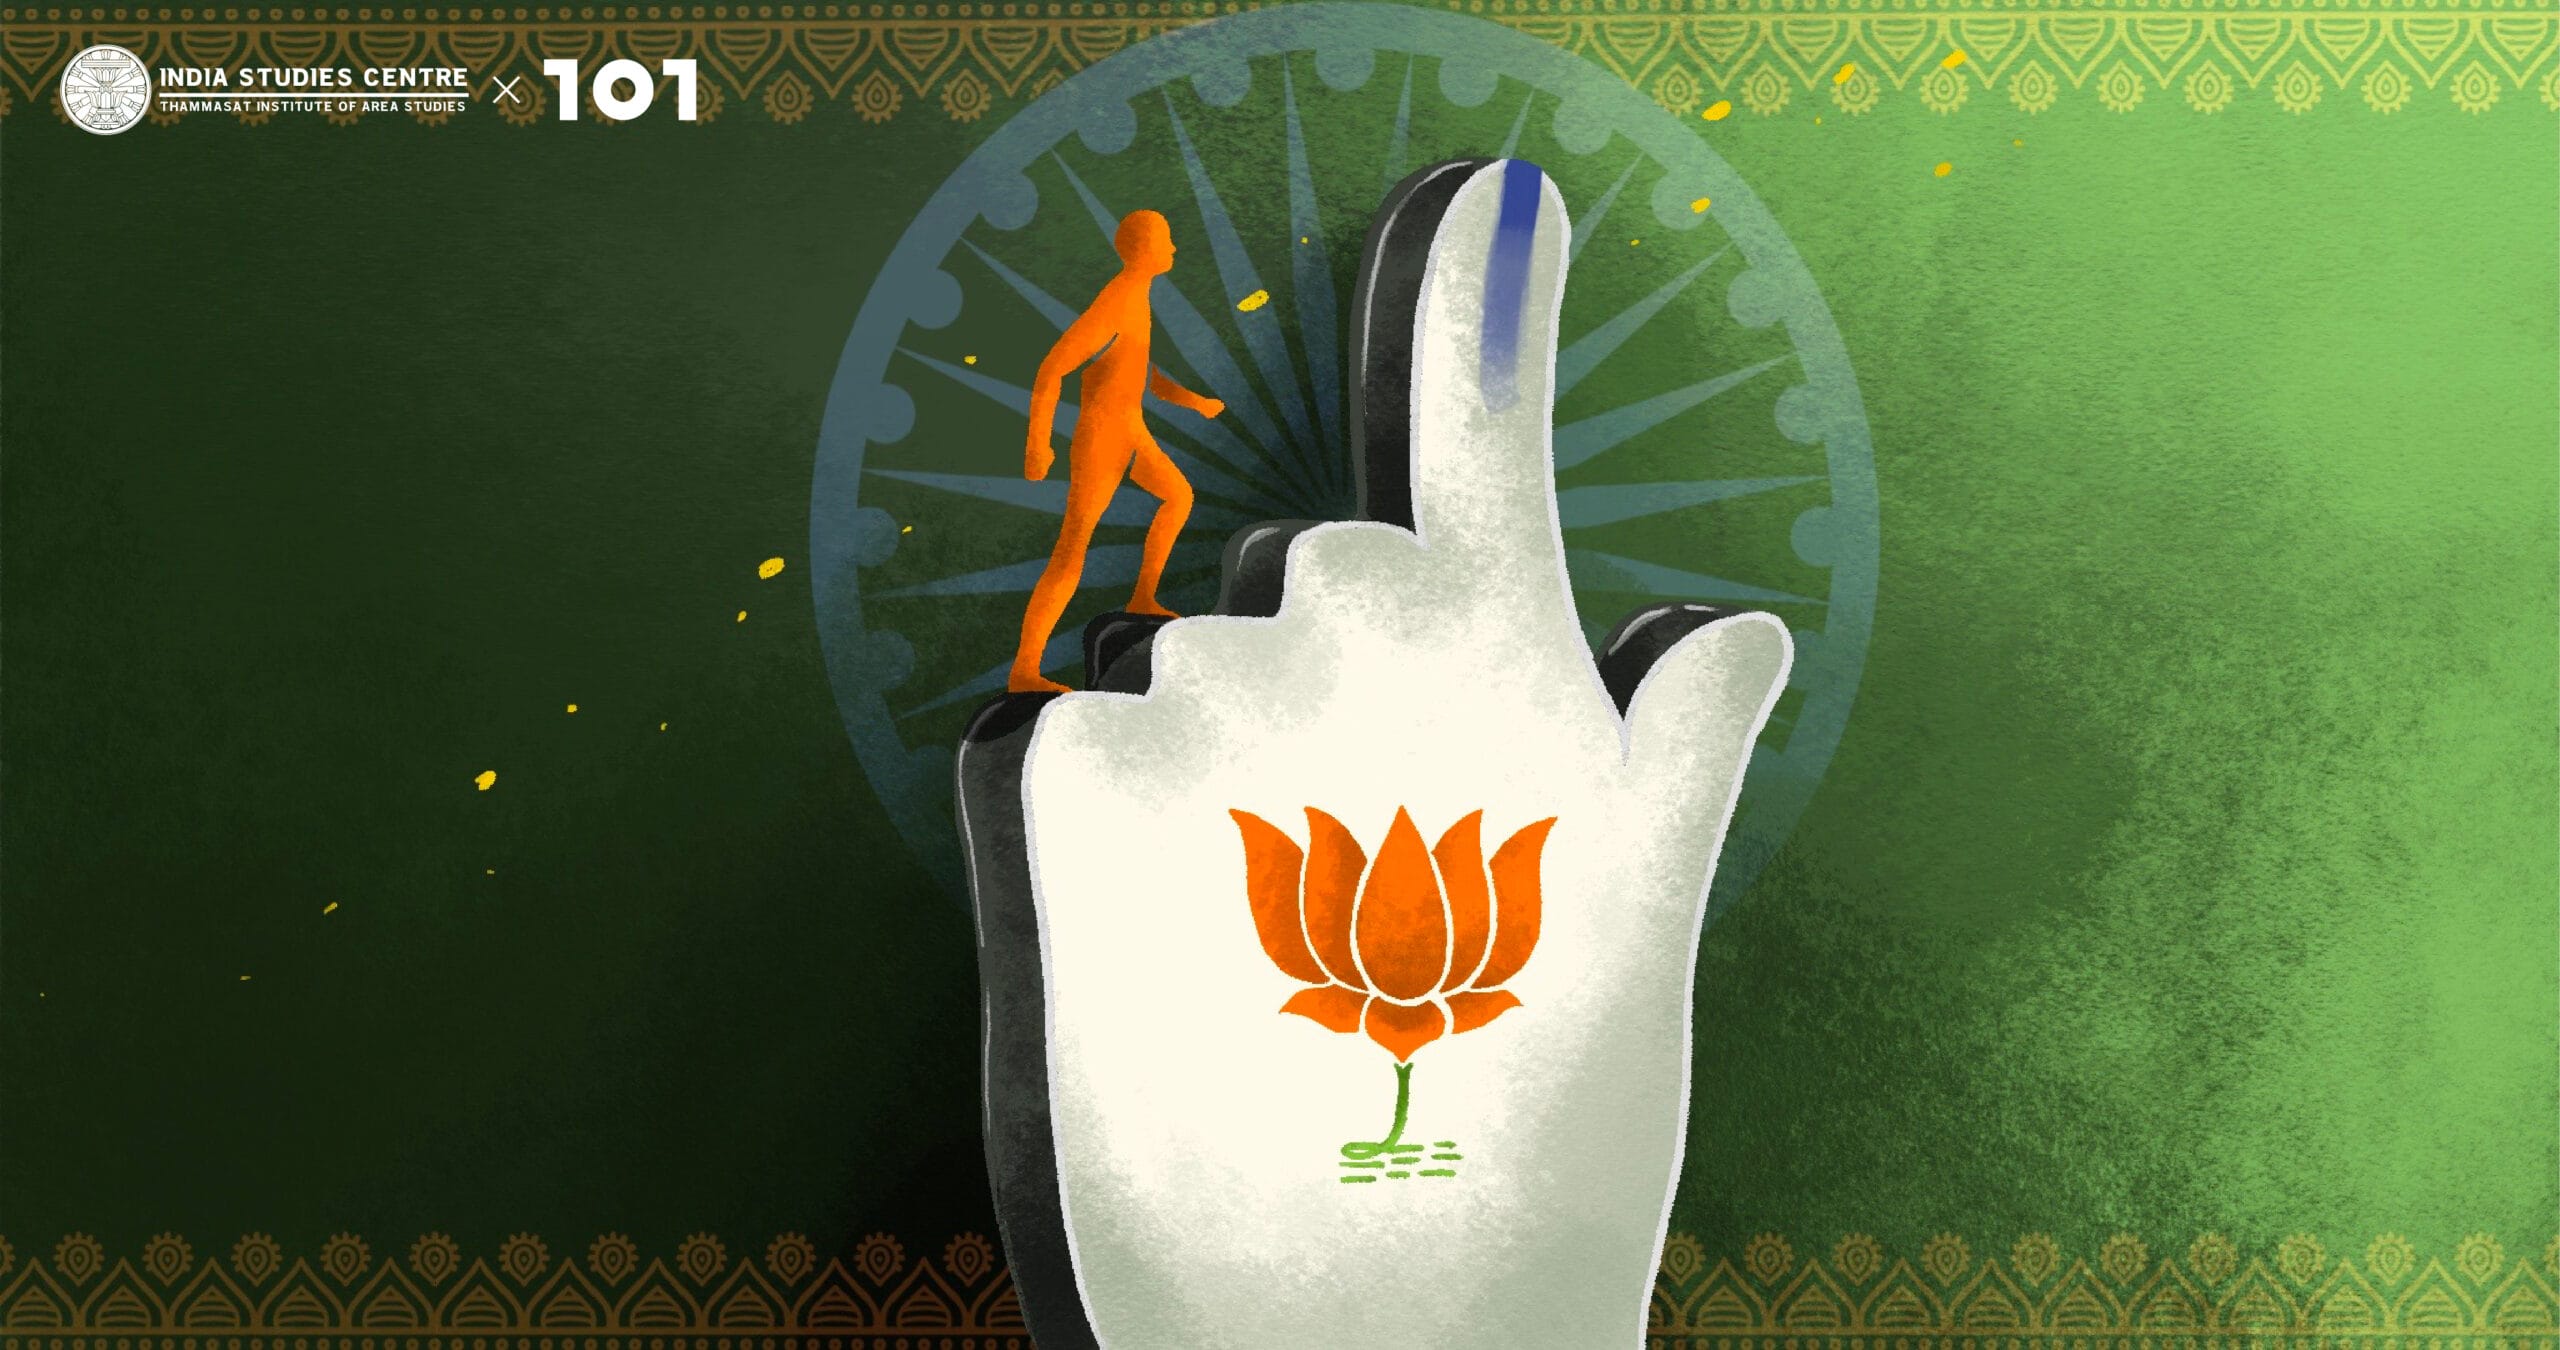 เมื่อพรรค BJP และชาตินิยมฮินดูยังได้ไปต่อ(?): สังเกตการณ์การเมืองอินเดียหลังการเลือกตั้งระดับรัฐ